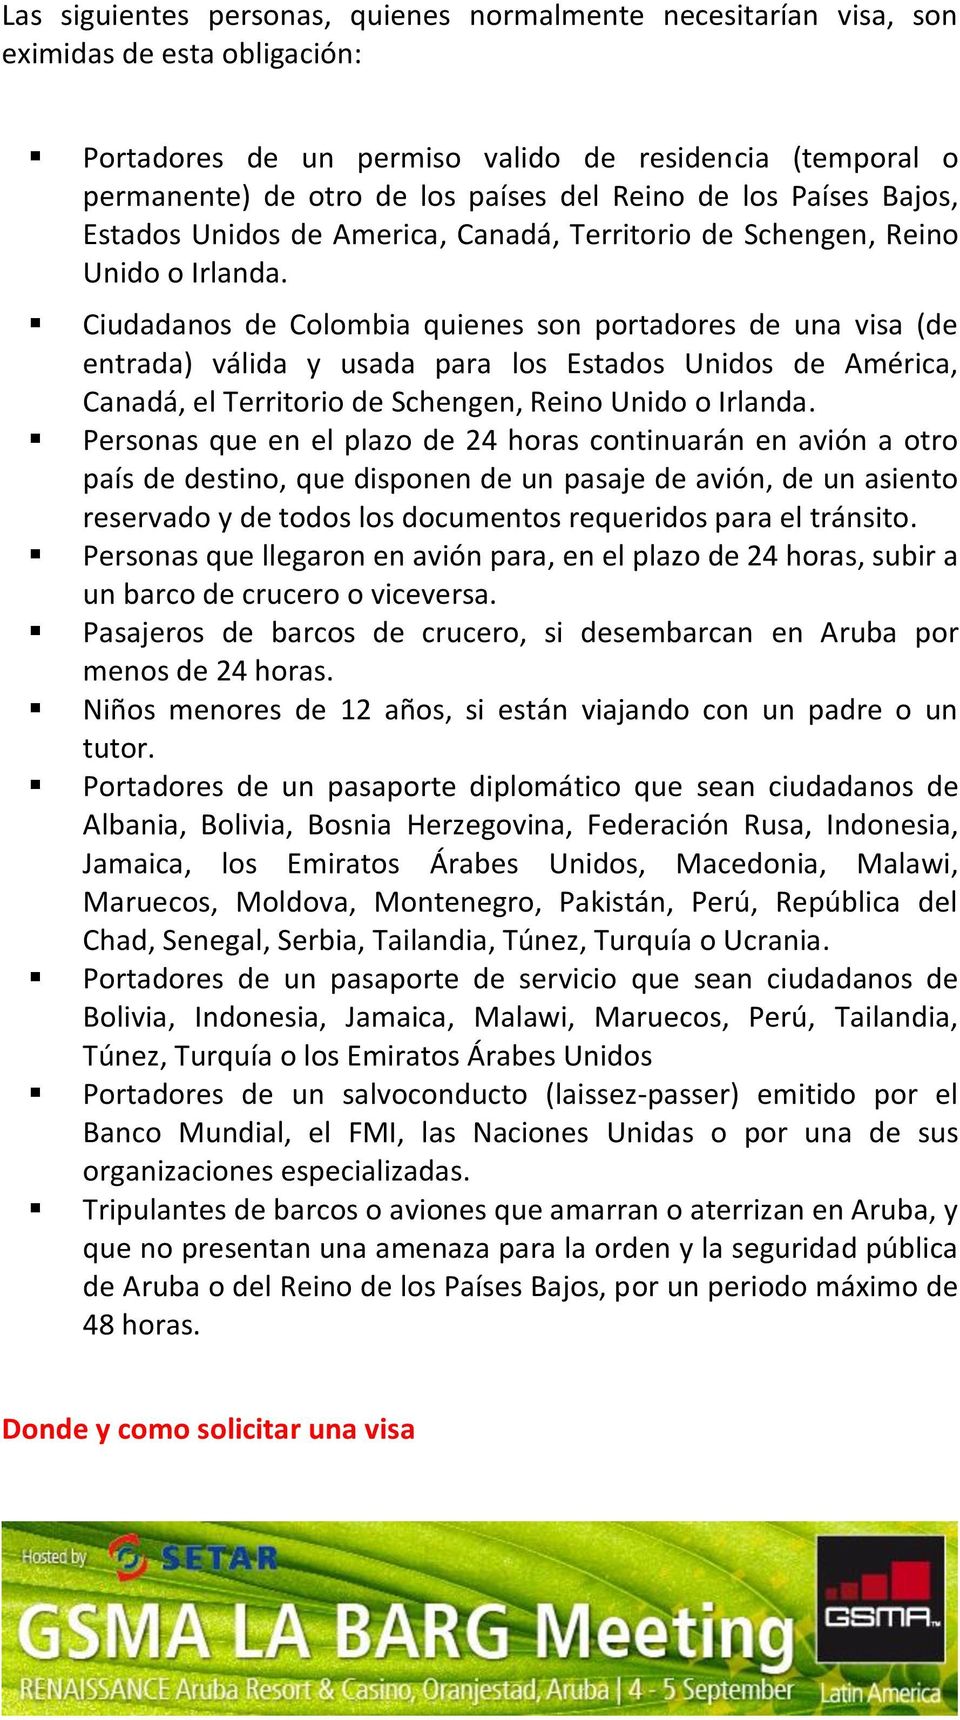 Ciudadanos de Colombia quienes son portadores de una visa (de entrada) válida y usada para los Estados Unidos de América, Canadá, el Territorio de Schengen, Reino Unido o Irlanda.